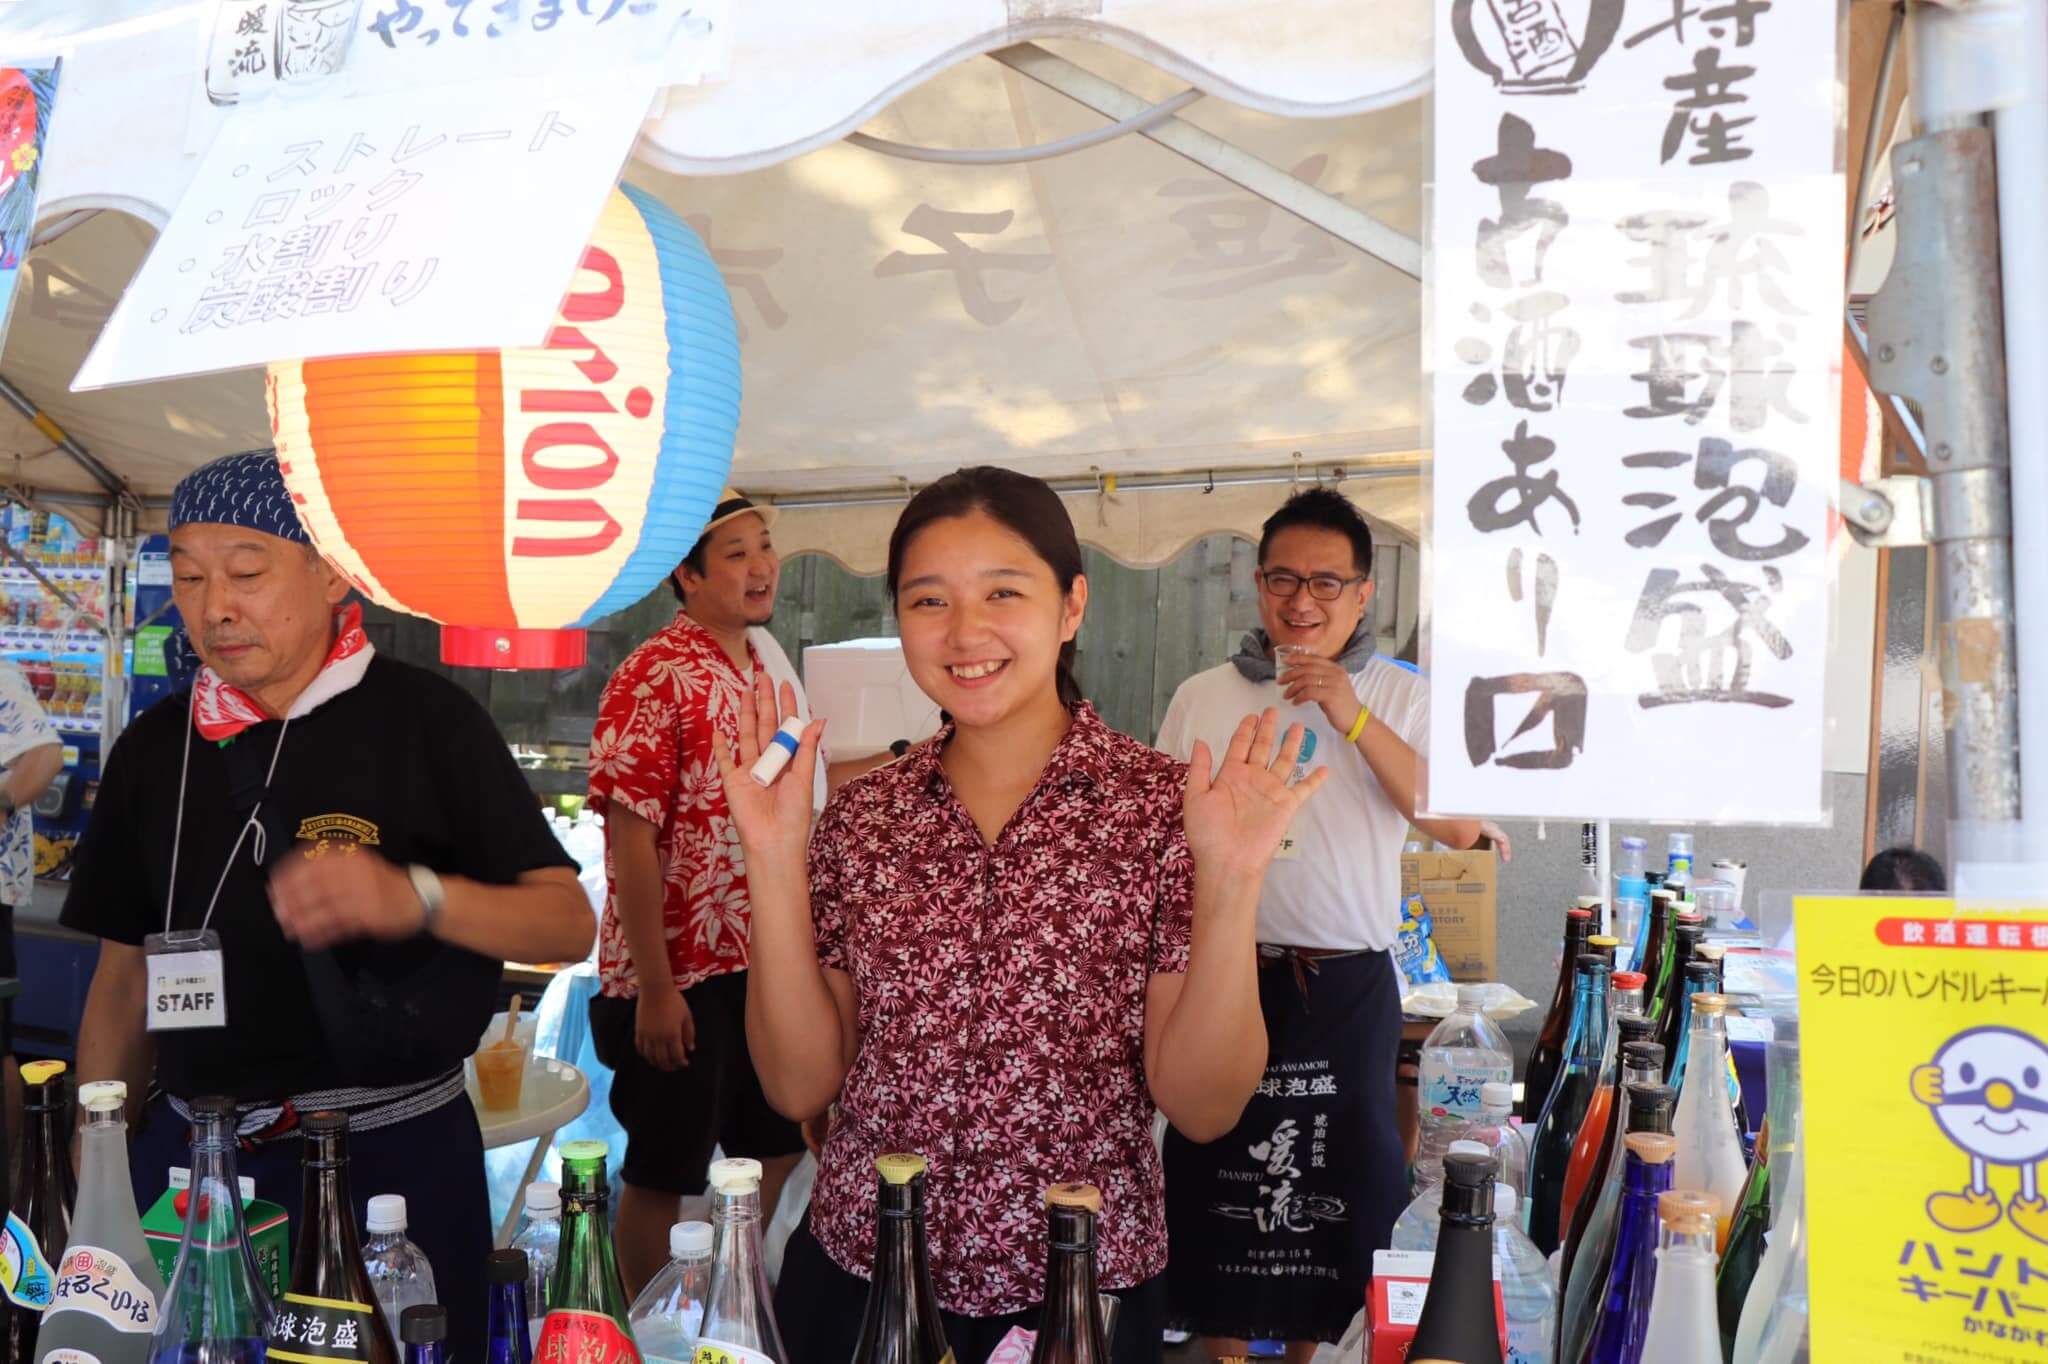 泡盛ガールえりーさん 逗子から広がる大きな輪〜zushi-Okinawa祭り